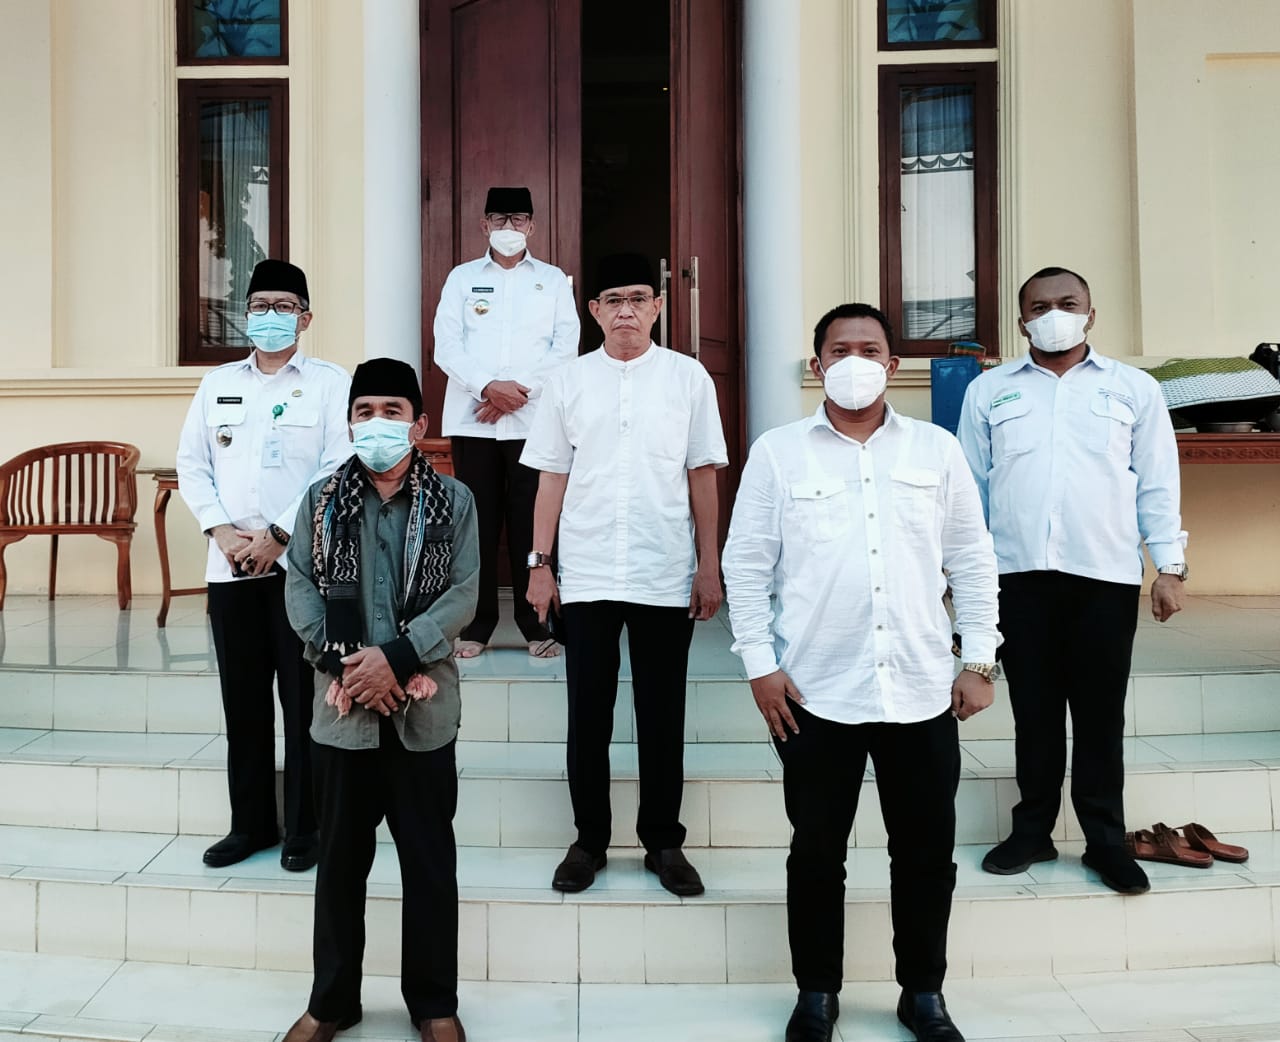 Tokoh Masyarakat Tigaraksa Sambangi Gubernur Banten di Rumah Dinas, Bahas Apa Ya?